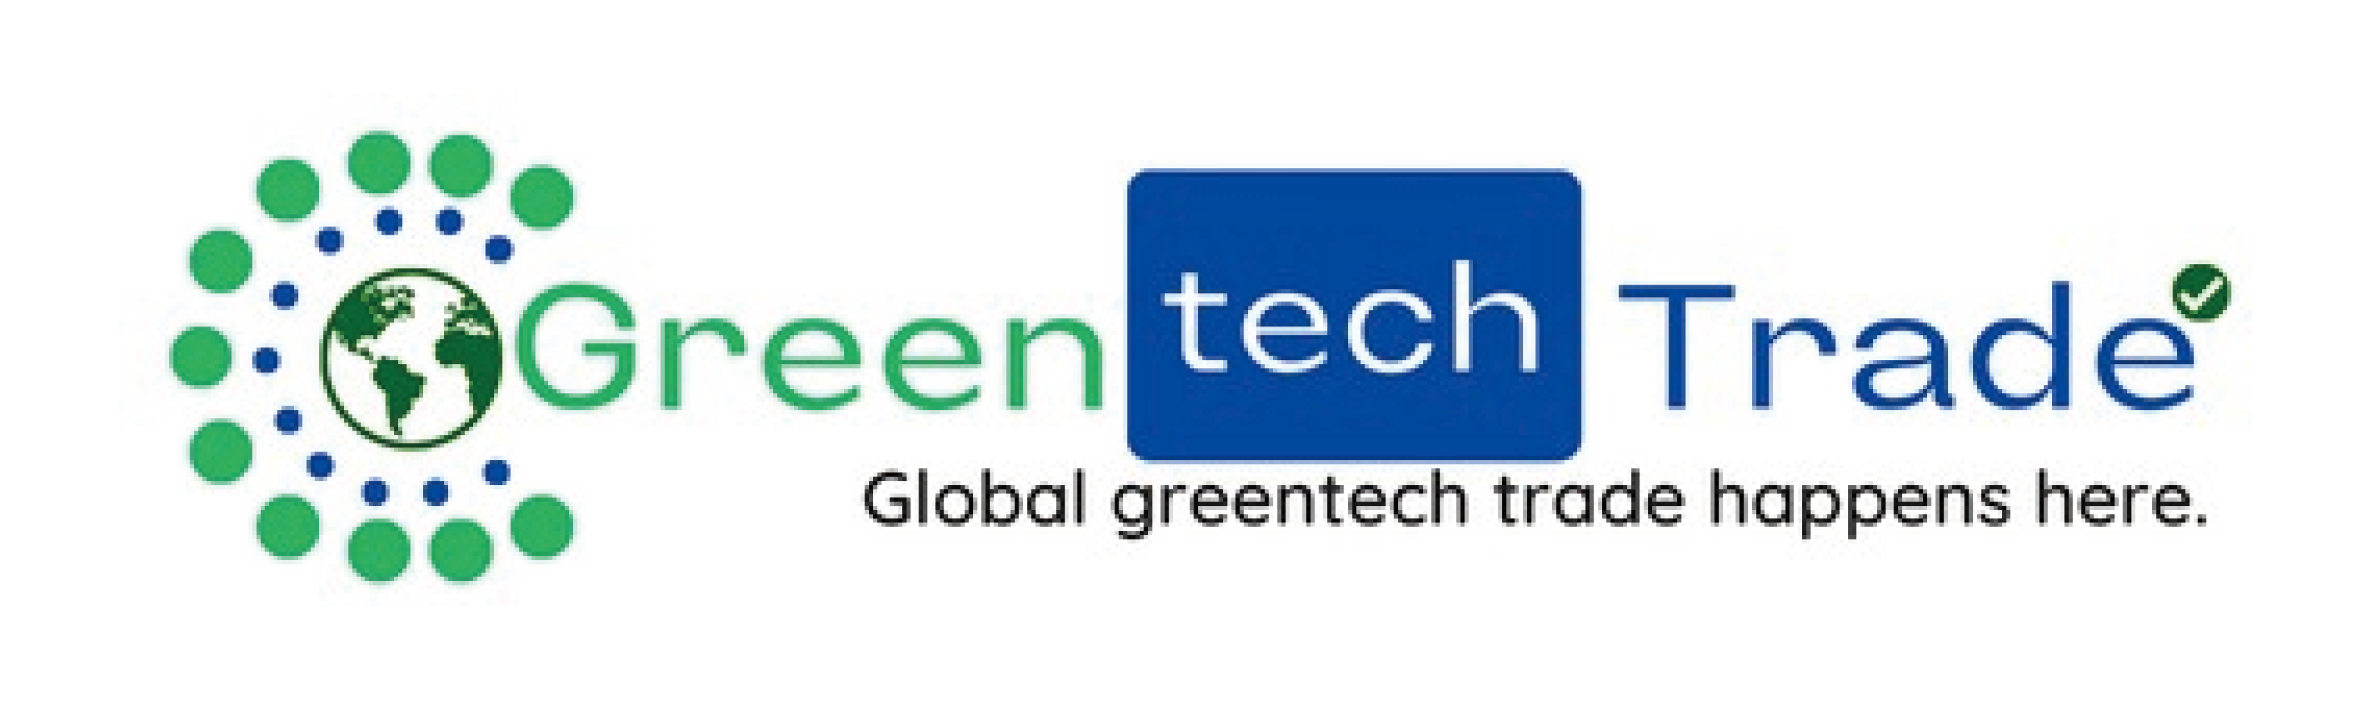 Greentechtrade